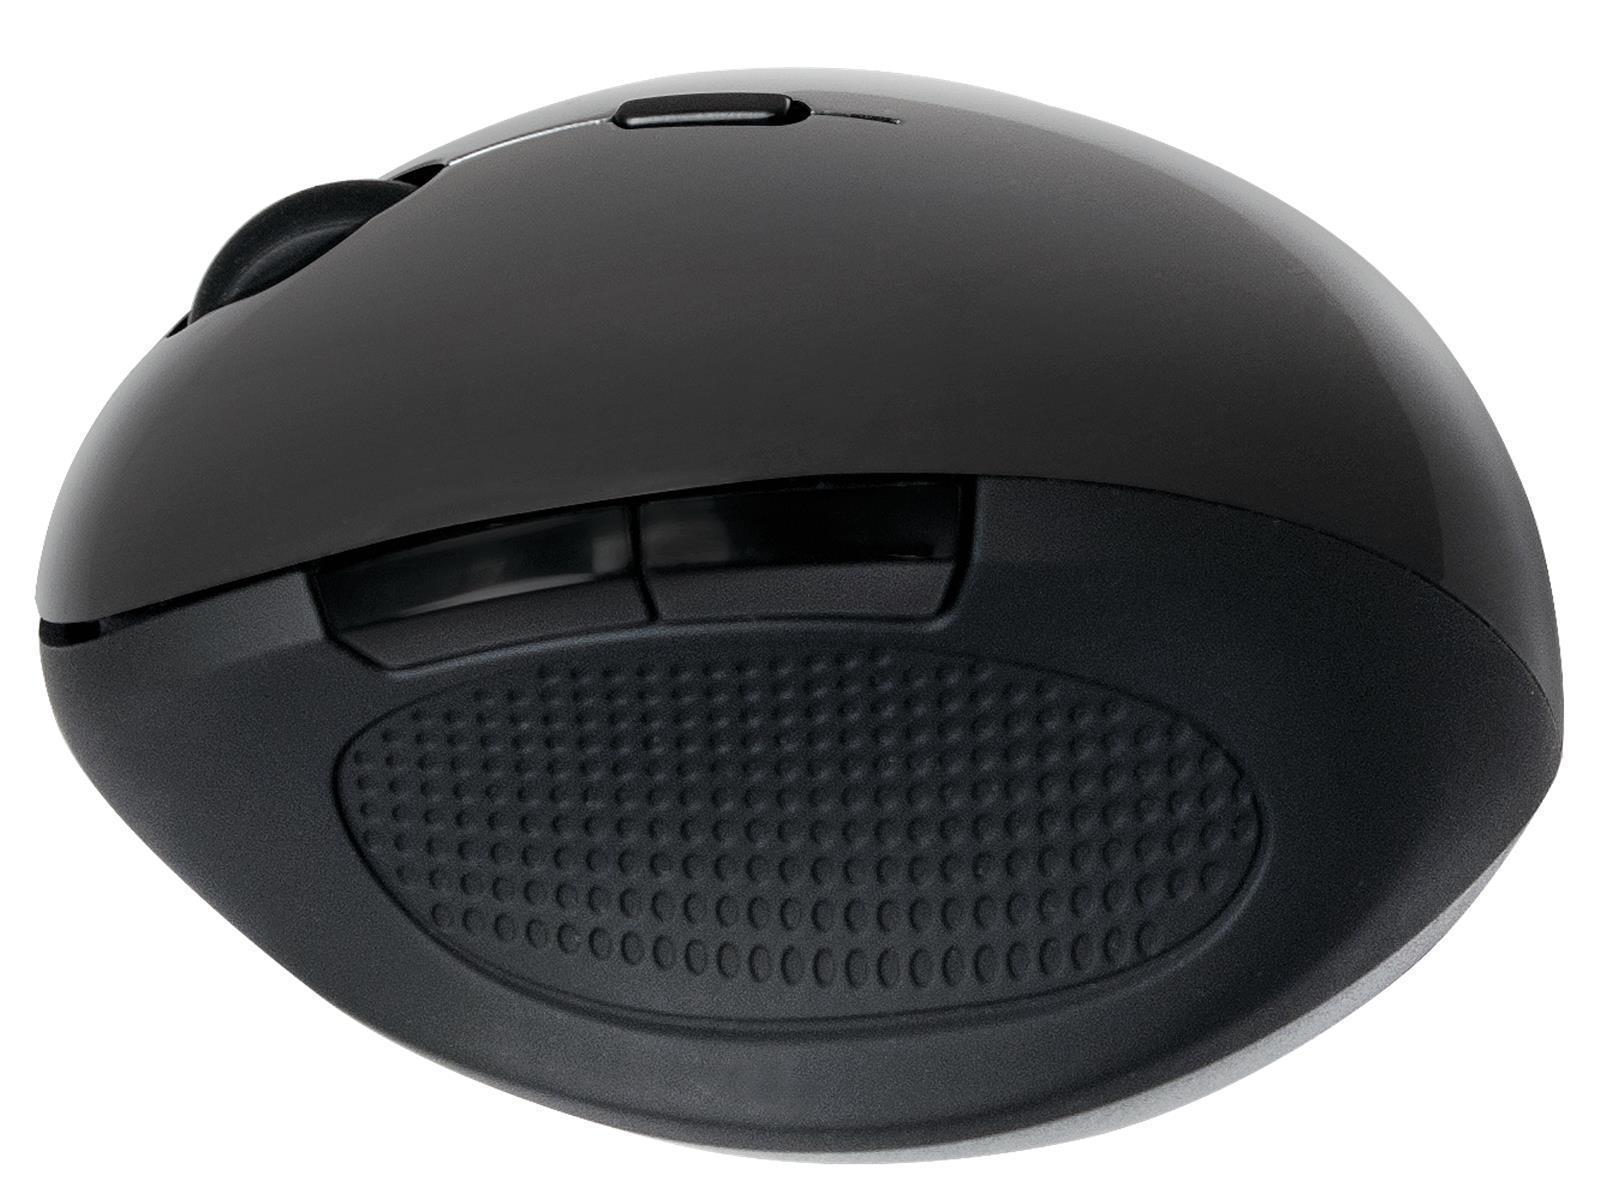 Maus, Wireless 2,4G Mouse, Optisch, schwarz, 1600dpi, Ergonomisches Design